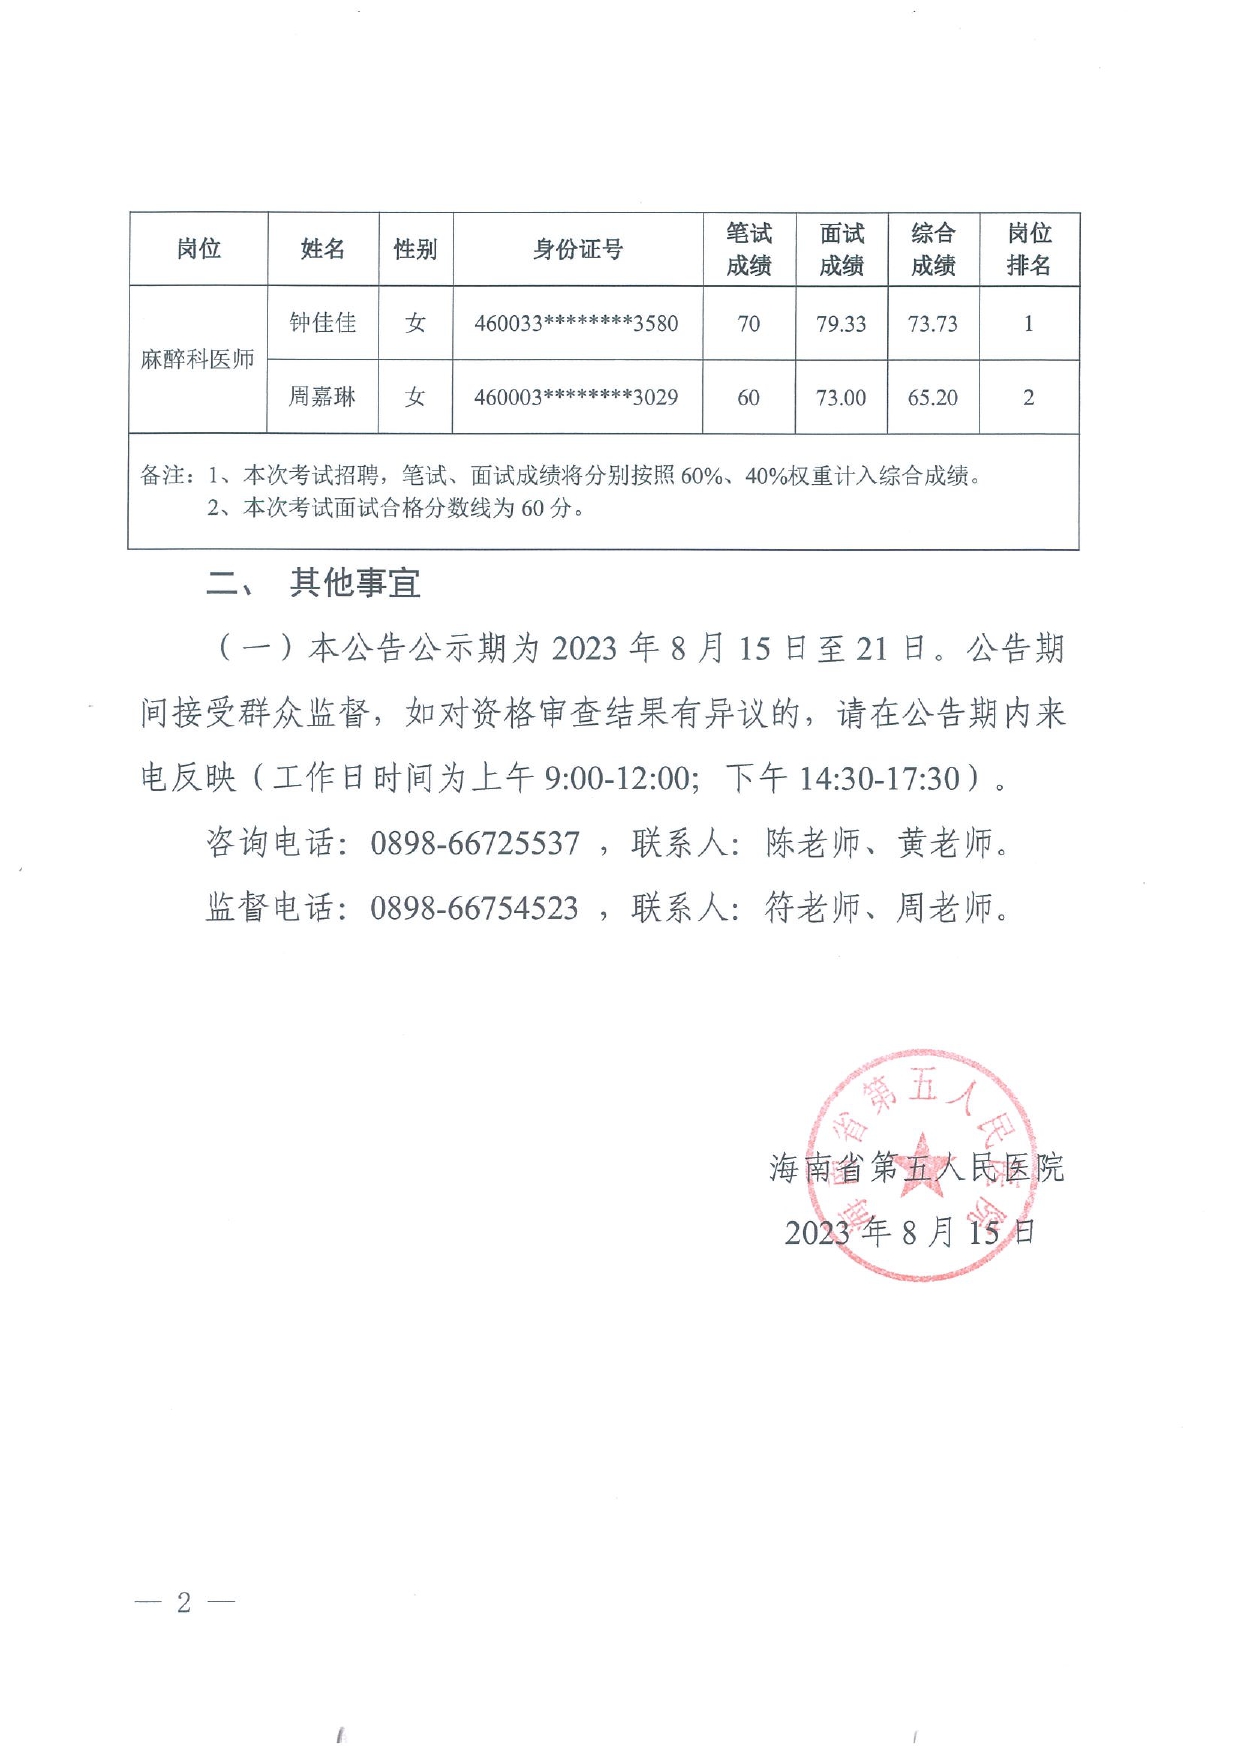 海南省第五人民医院2023年公开招聘工作人员考试成绩公告20230815(1)_page-0002.jpg